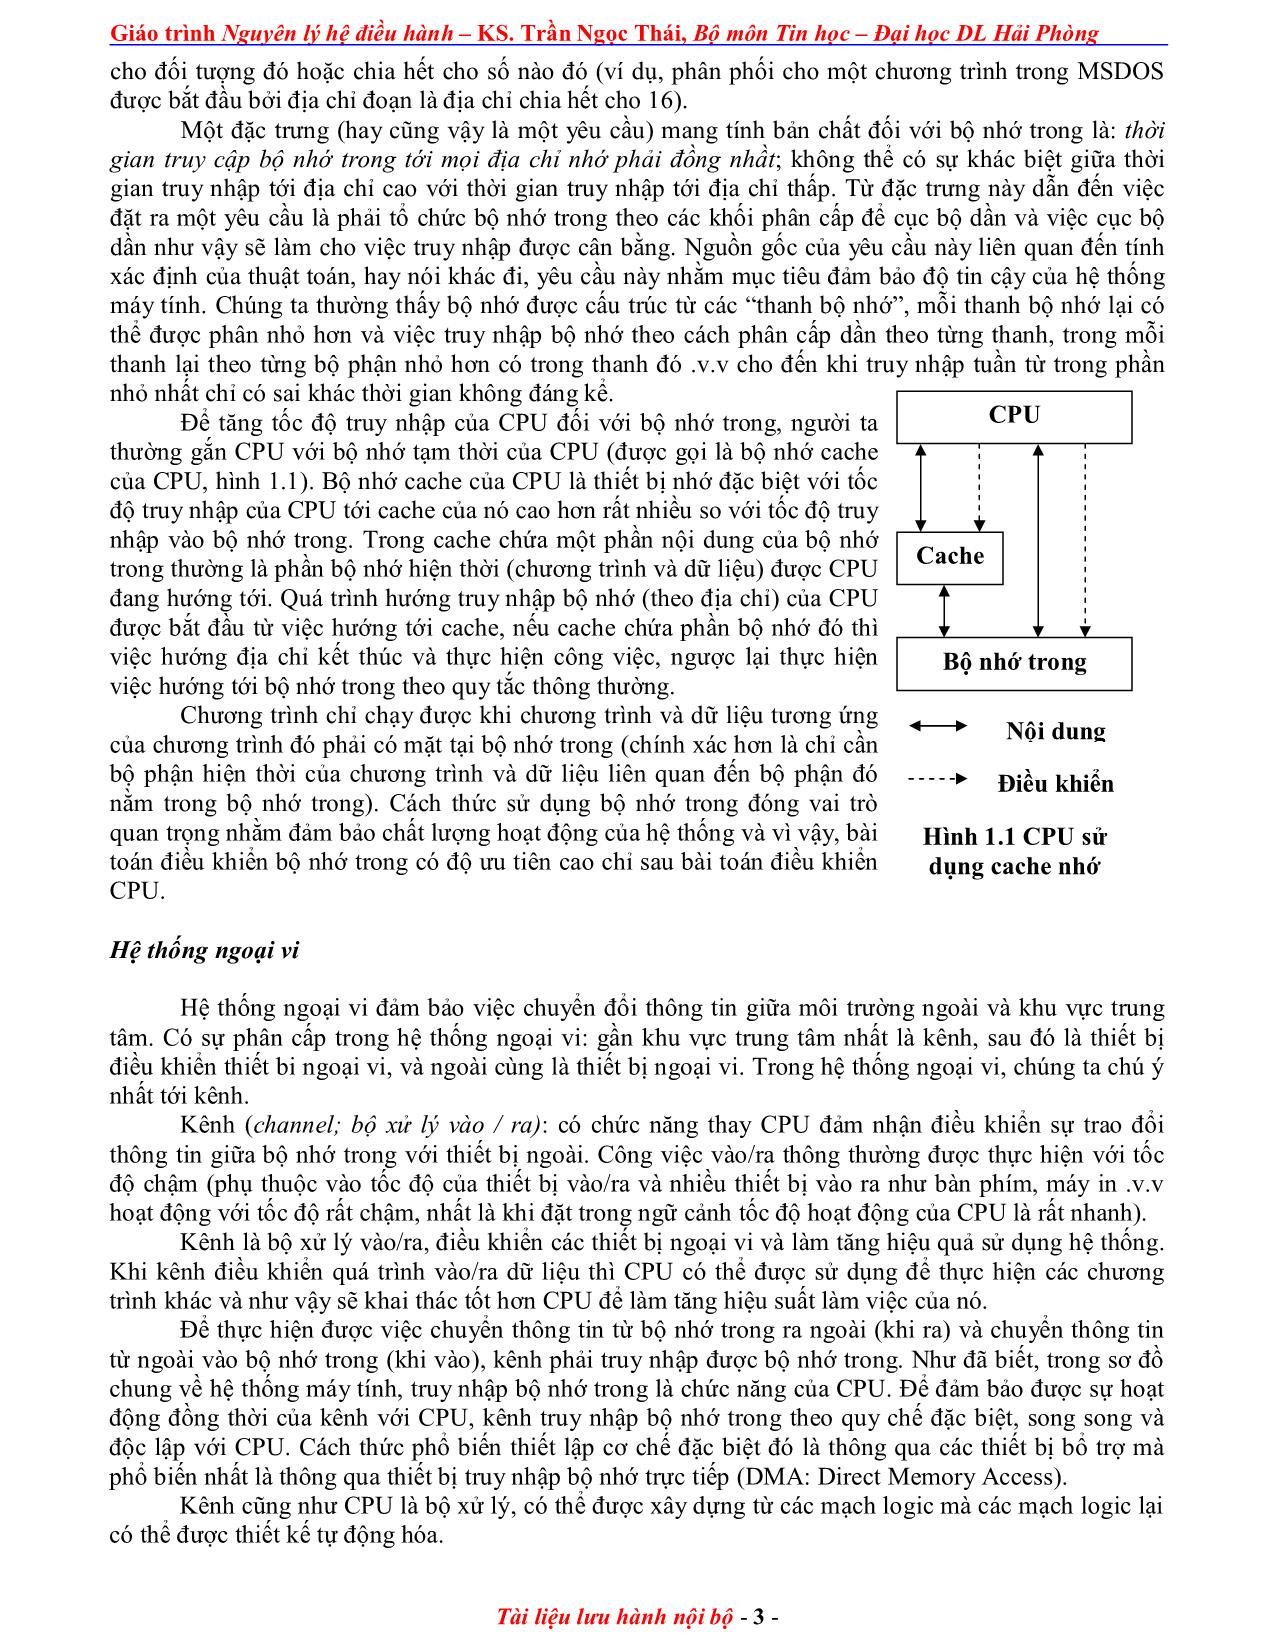 Giáo trình Nguyên lý điều hành (Phần 1) trang 3